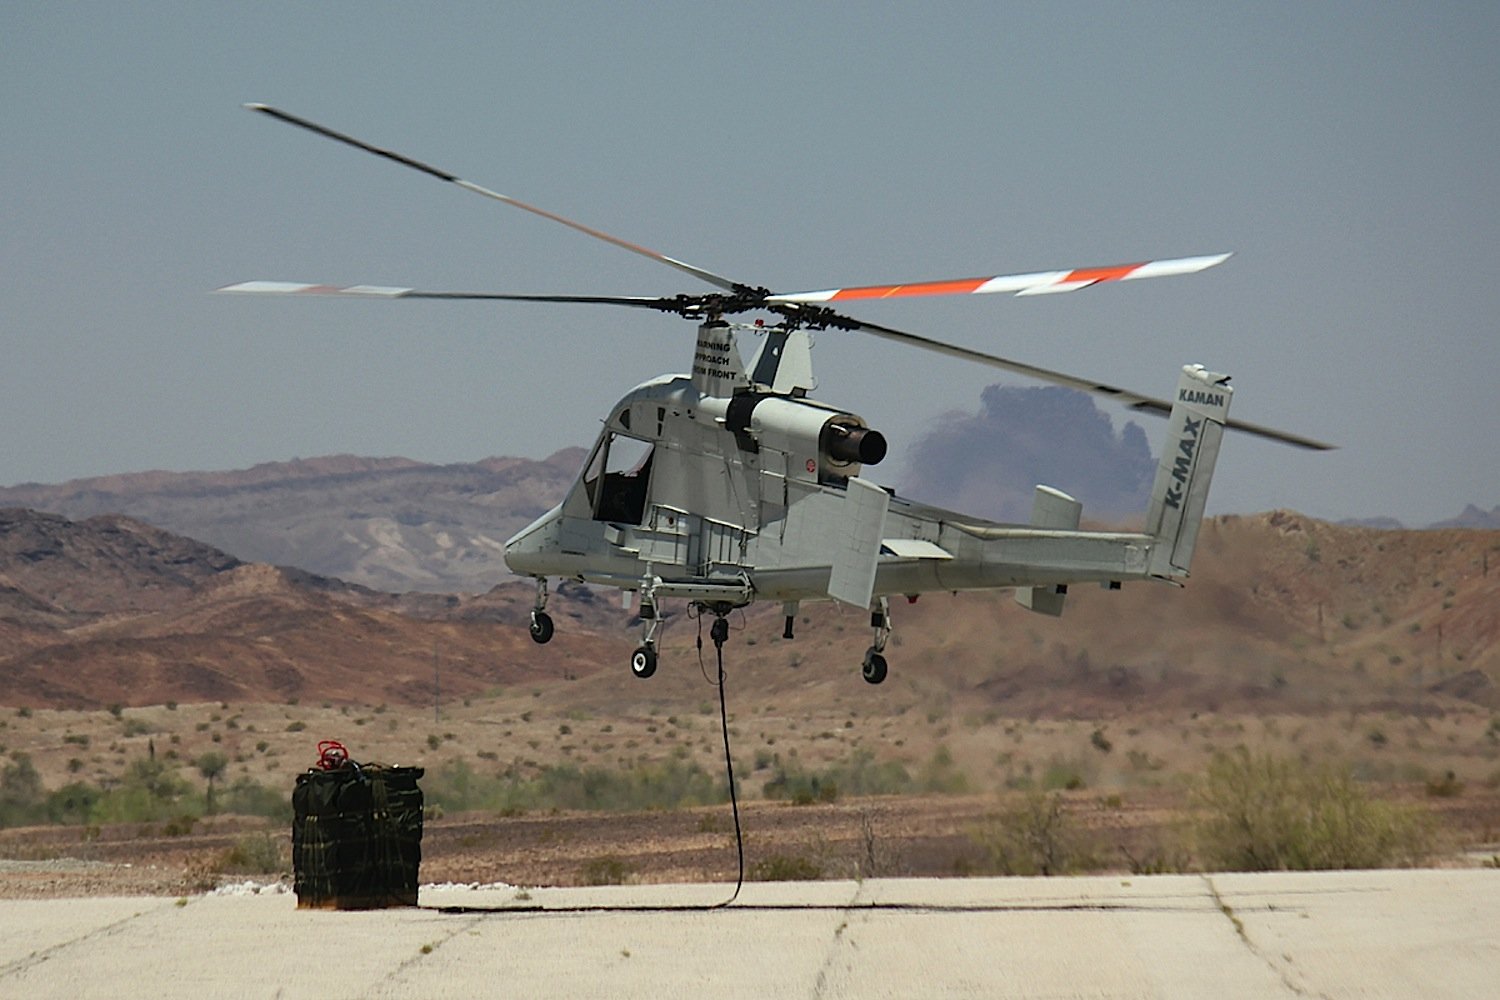 Zwischen 2011 und 2014 übernahm K-MAX Transportaufgaben im Afghanistan-Krieg. Jetzt soll der unbemannte Helikopter Brände löschen und Menschen aus Gefahrensituationen befreien.